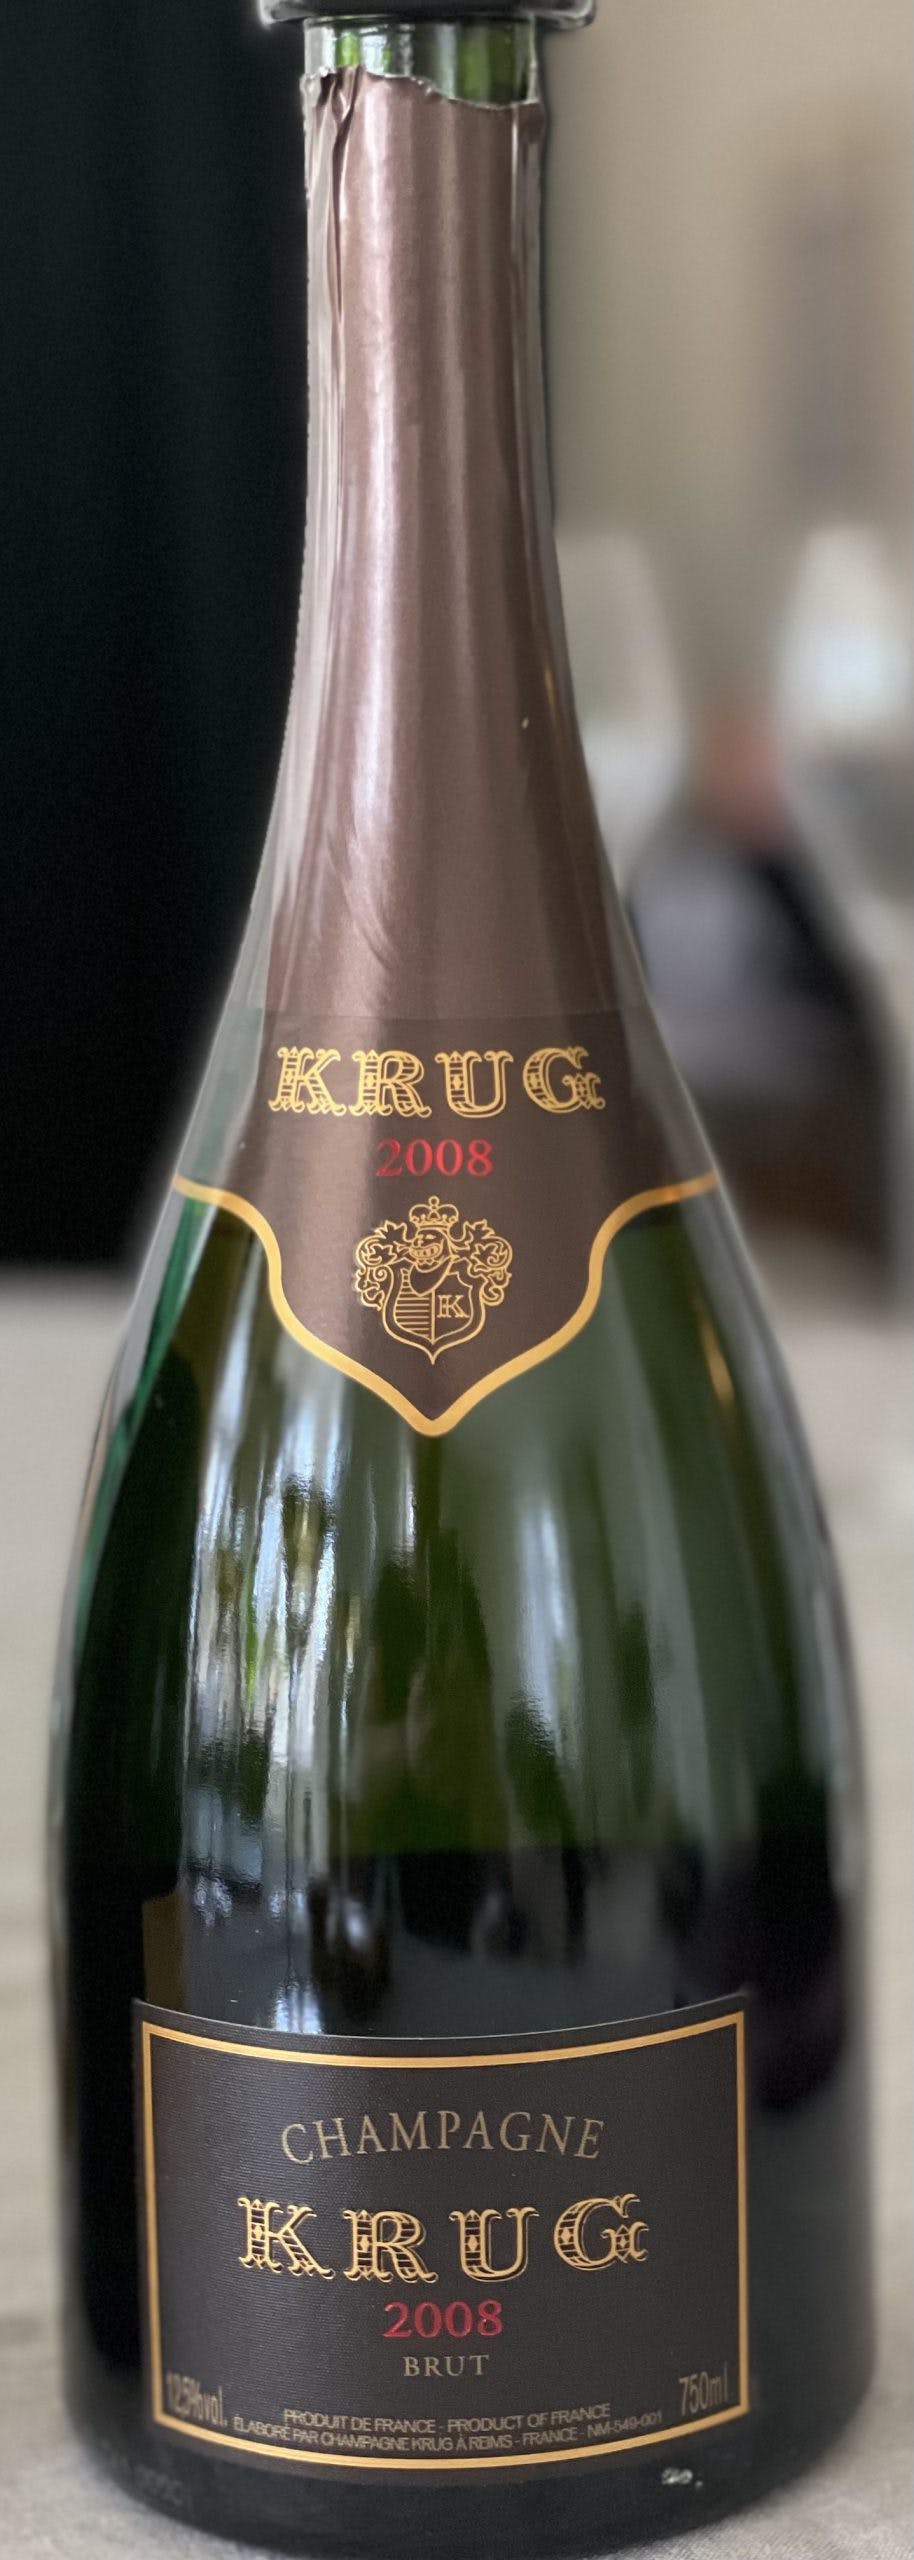 Krug 2008 - DinVinguide Krug 2008 champagne schelin